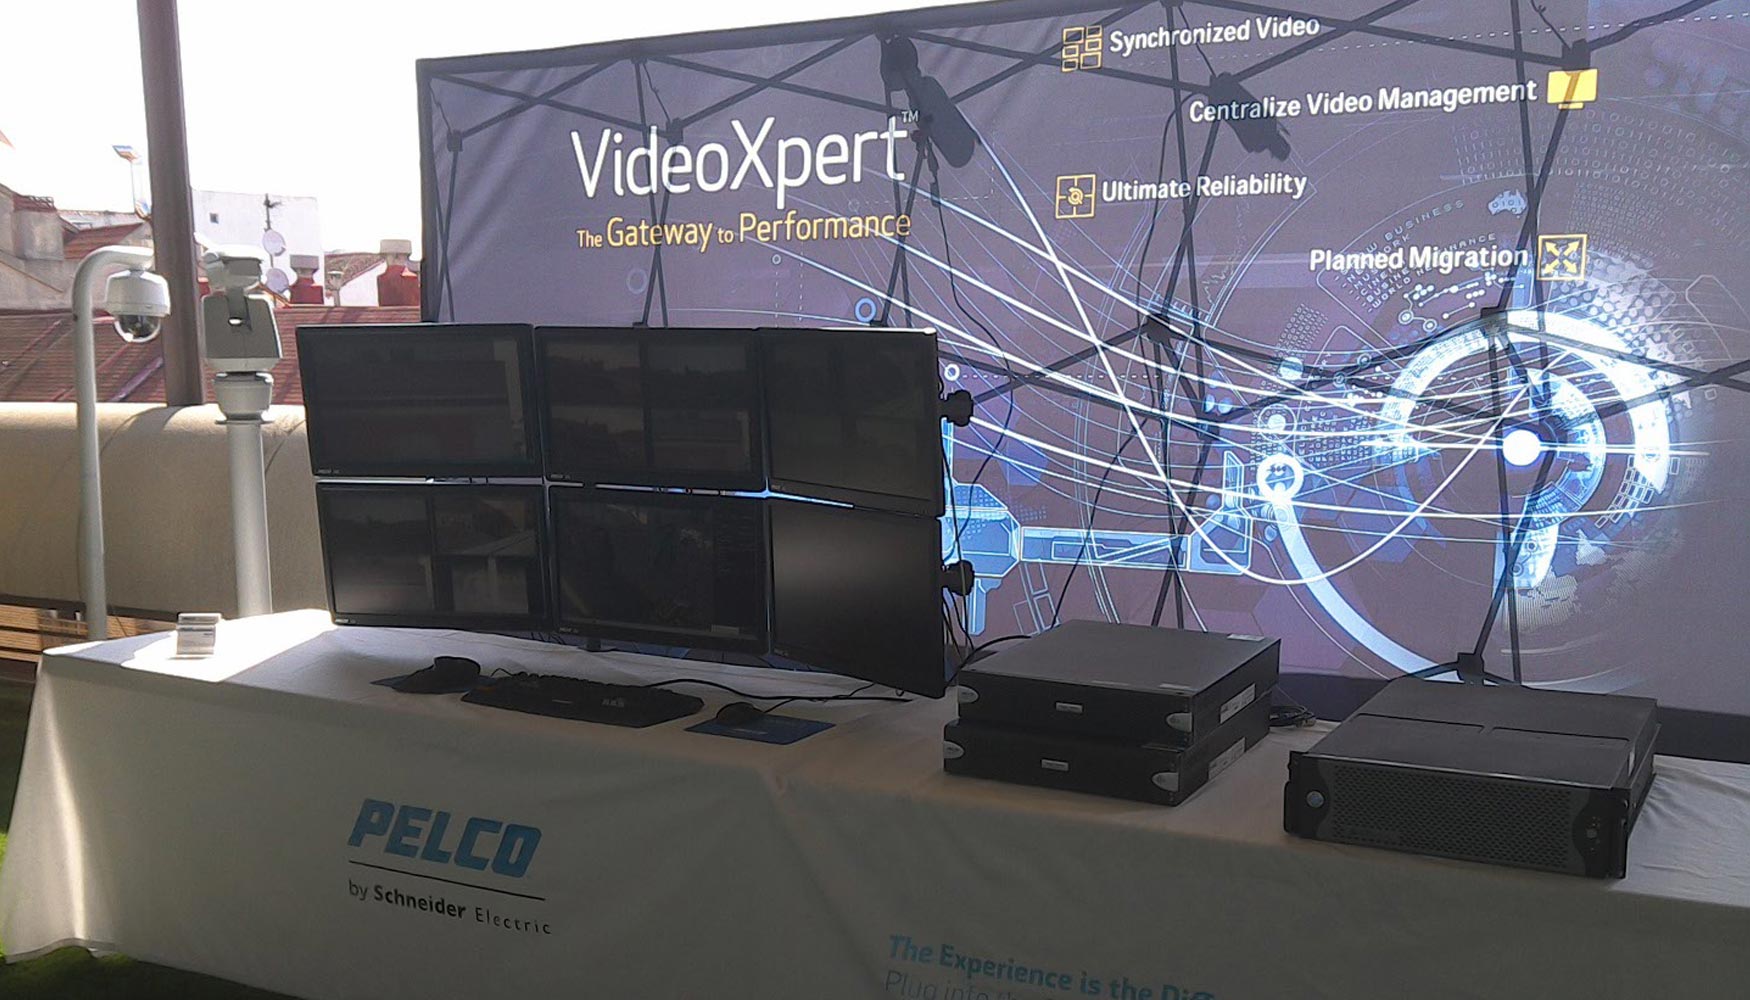 VideoXpert